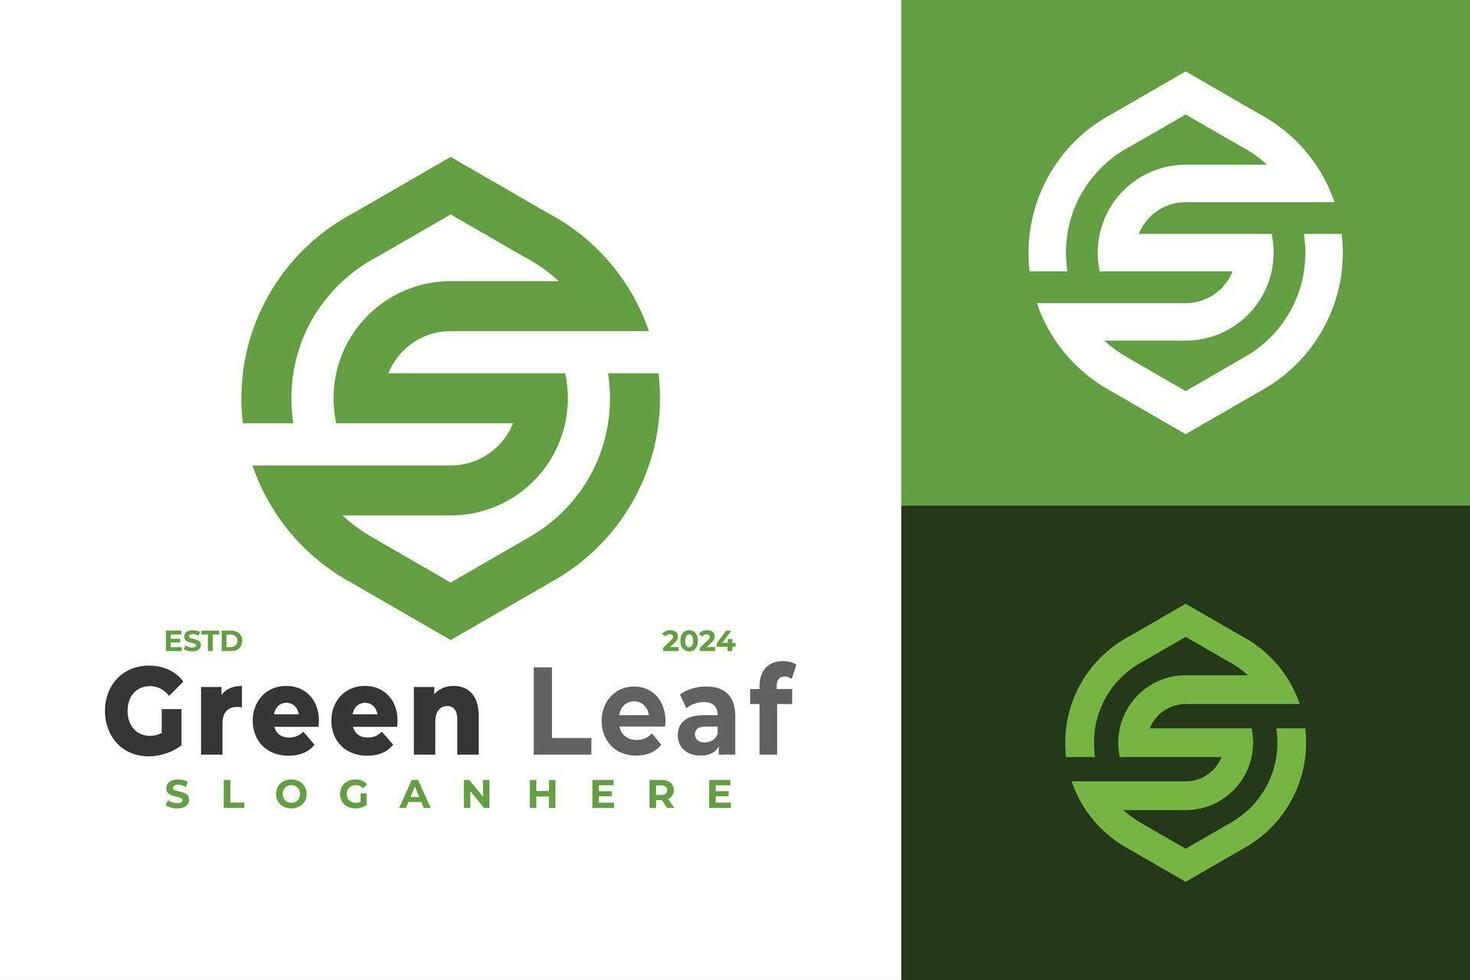 brief s monogram groen blad logo ontwerp symbool icoon illustratie vector